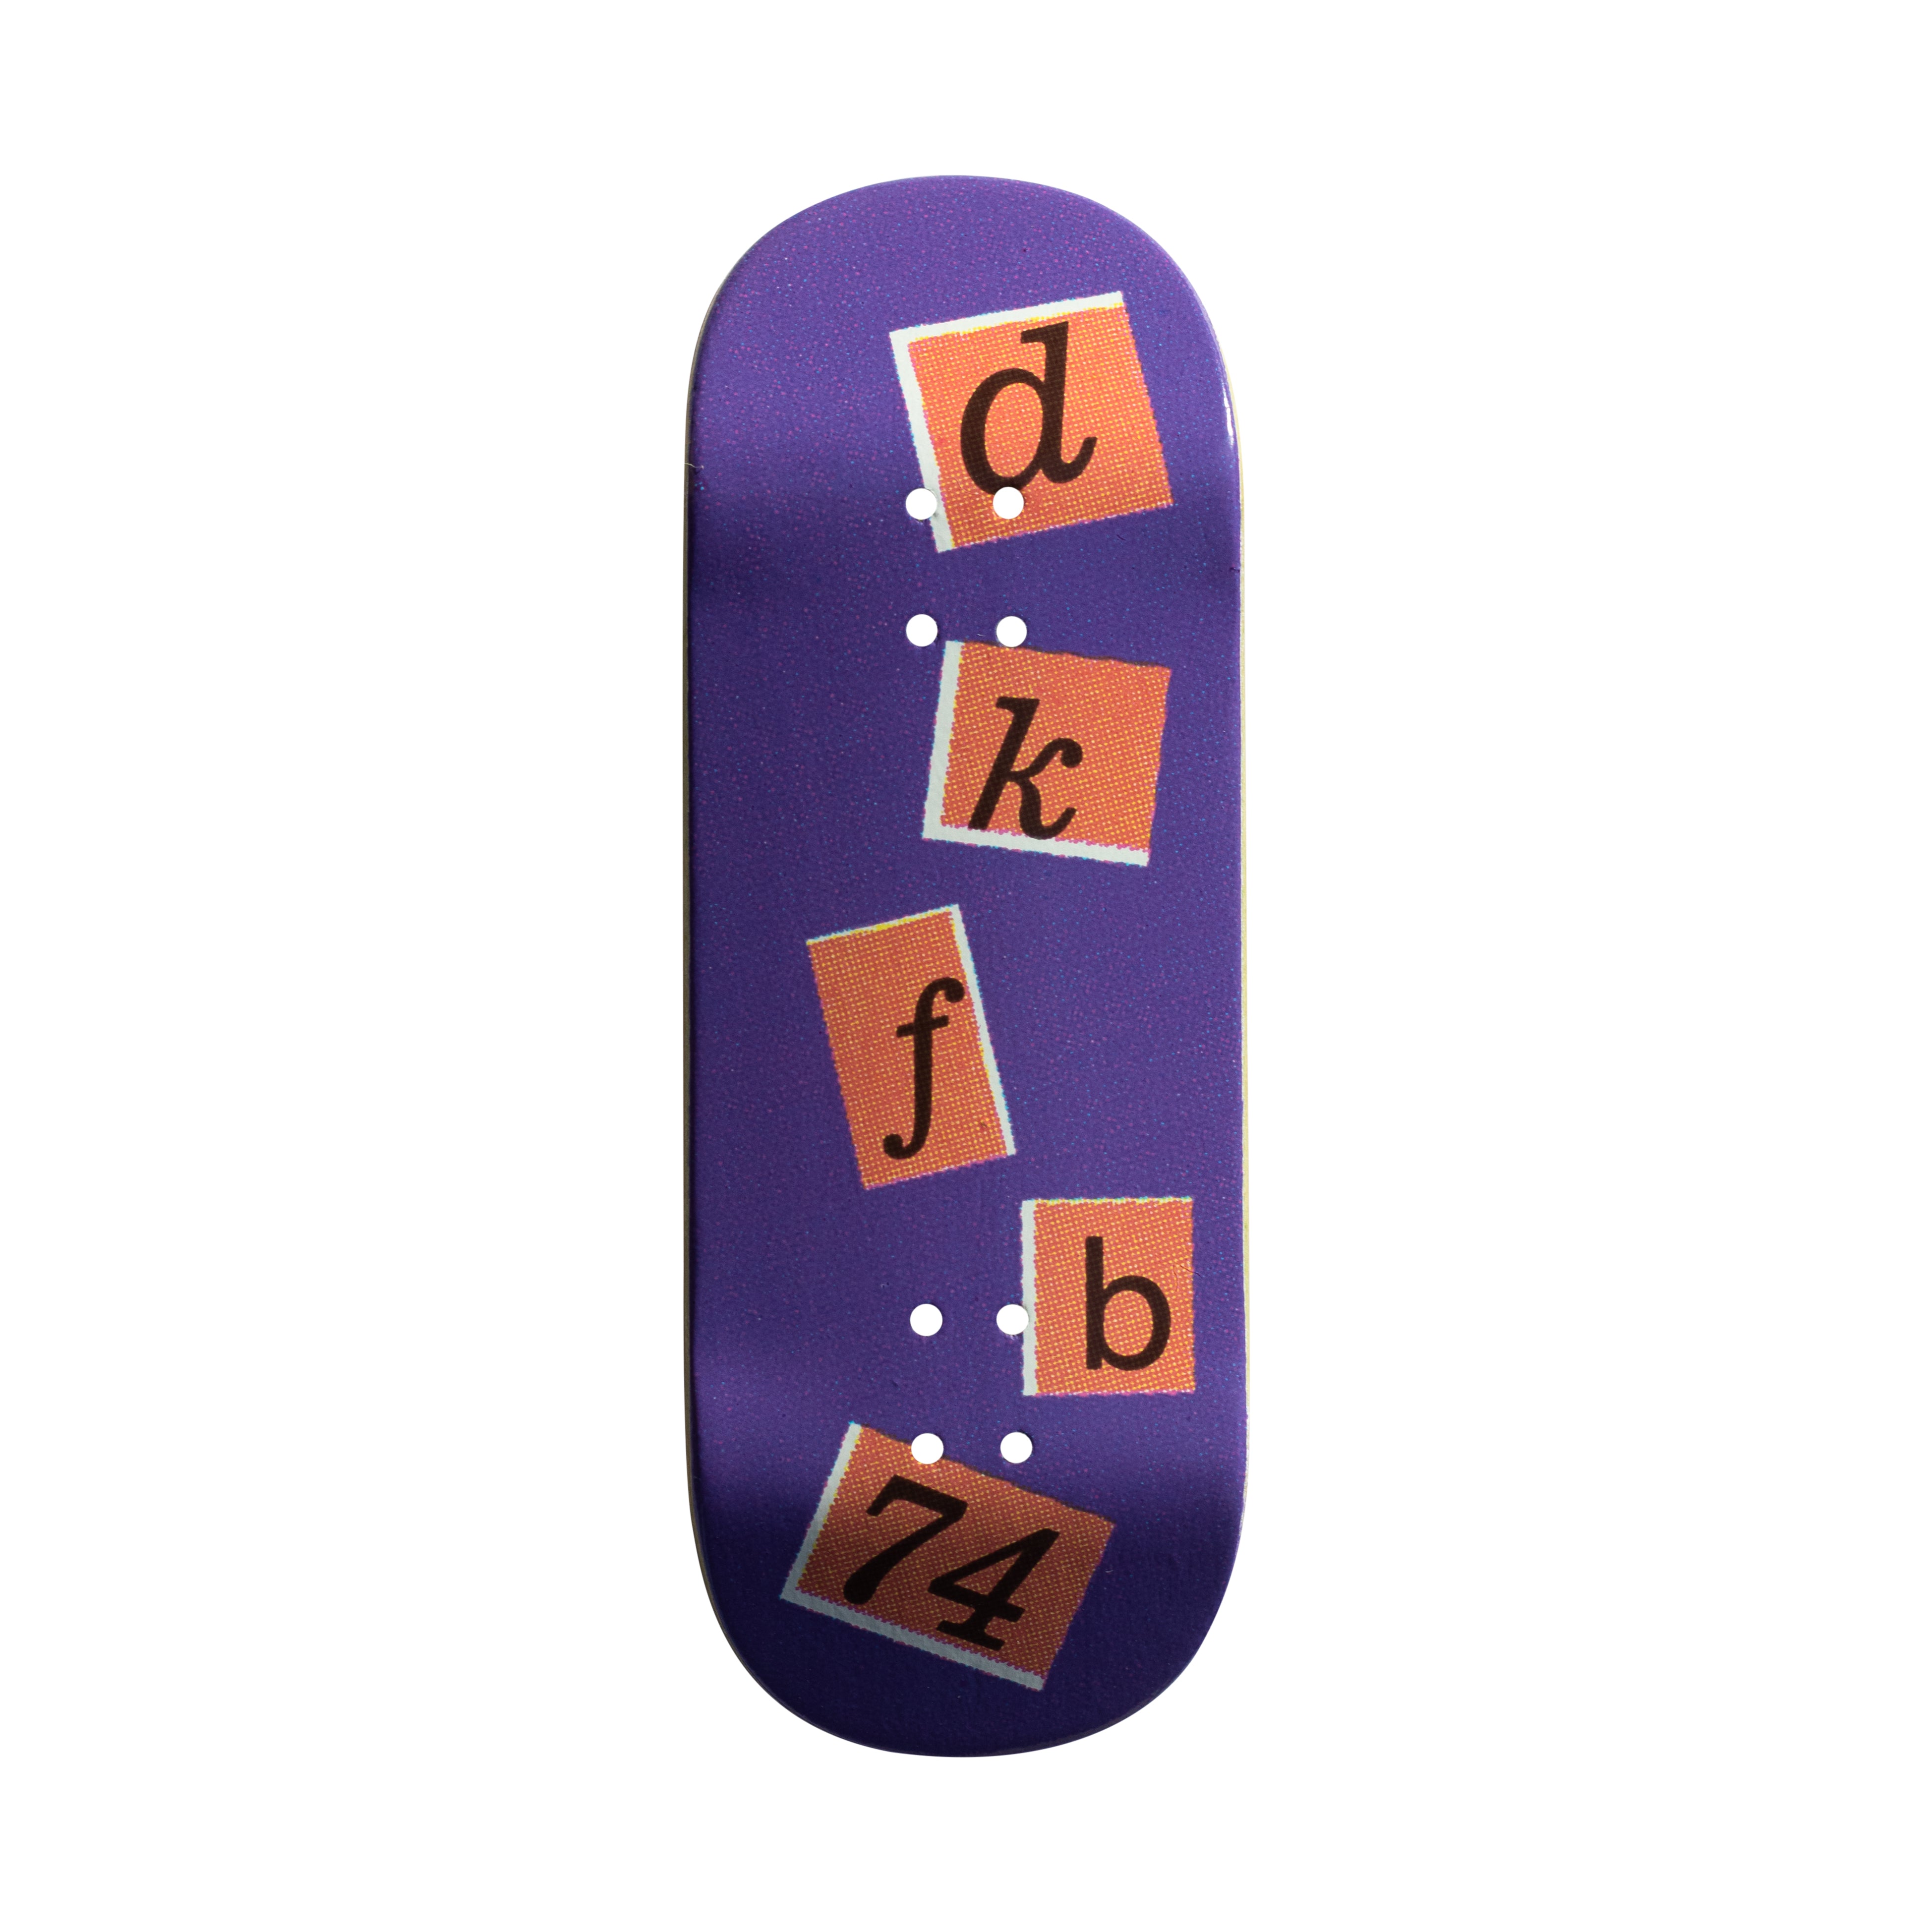 DK FB - 'dkfb74' Purple